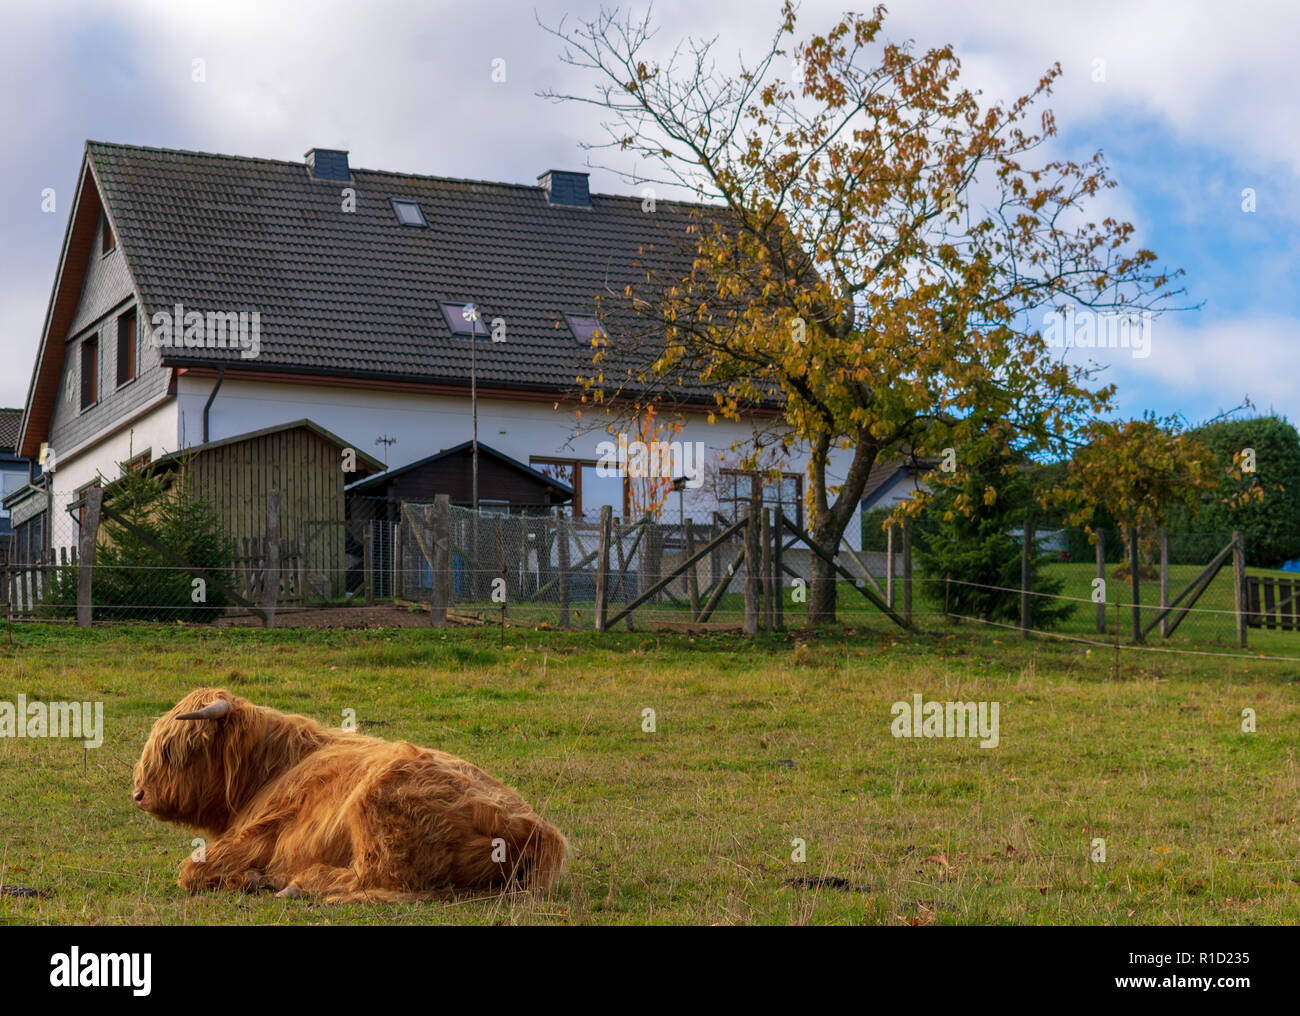 Highland-Cattle descansando en una granja en el Sauerland, Alemania. Foto de stock